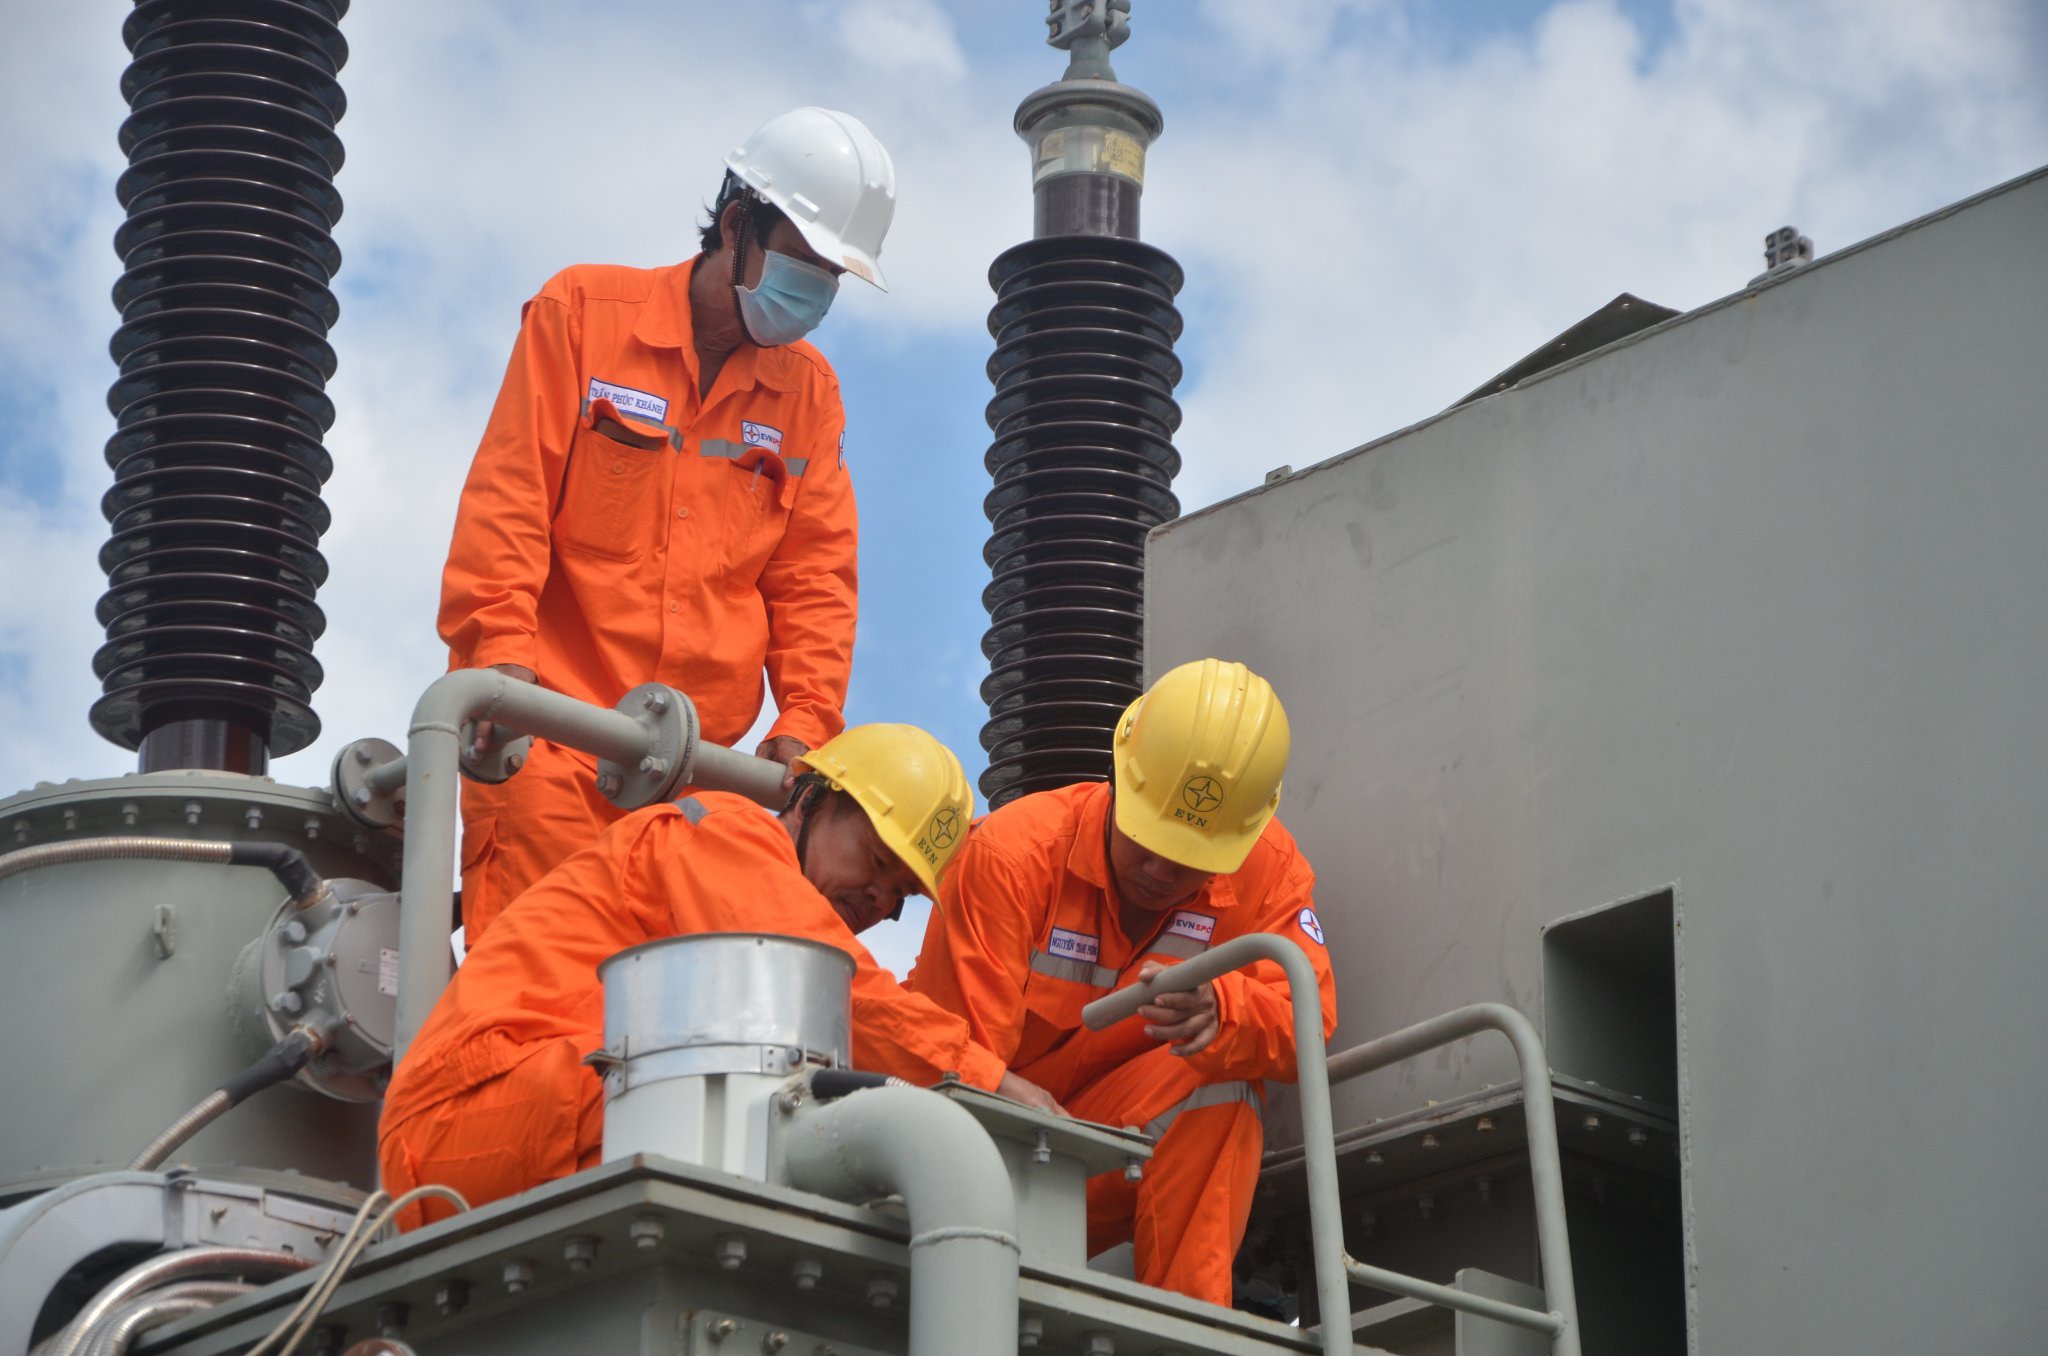 Công ty điện lực tỉnh đẩy nhanh tiến độ các công trình bổ sung nguồn điện nhằm bảo đảm ổn định, lâu dài. Trong ảnh: Nhân viên điện lực kiểm tra trạm điện tại huyện Long Điền.